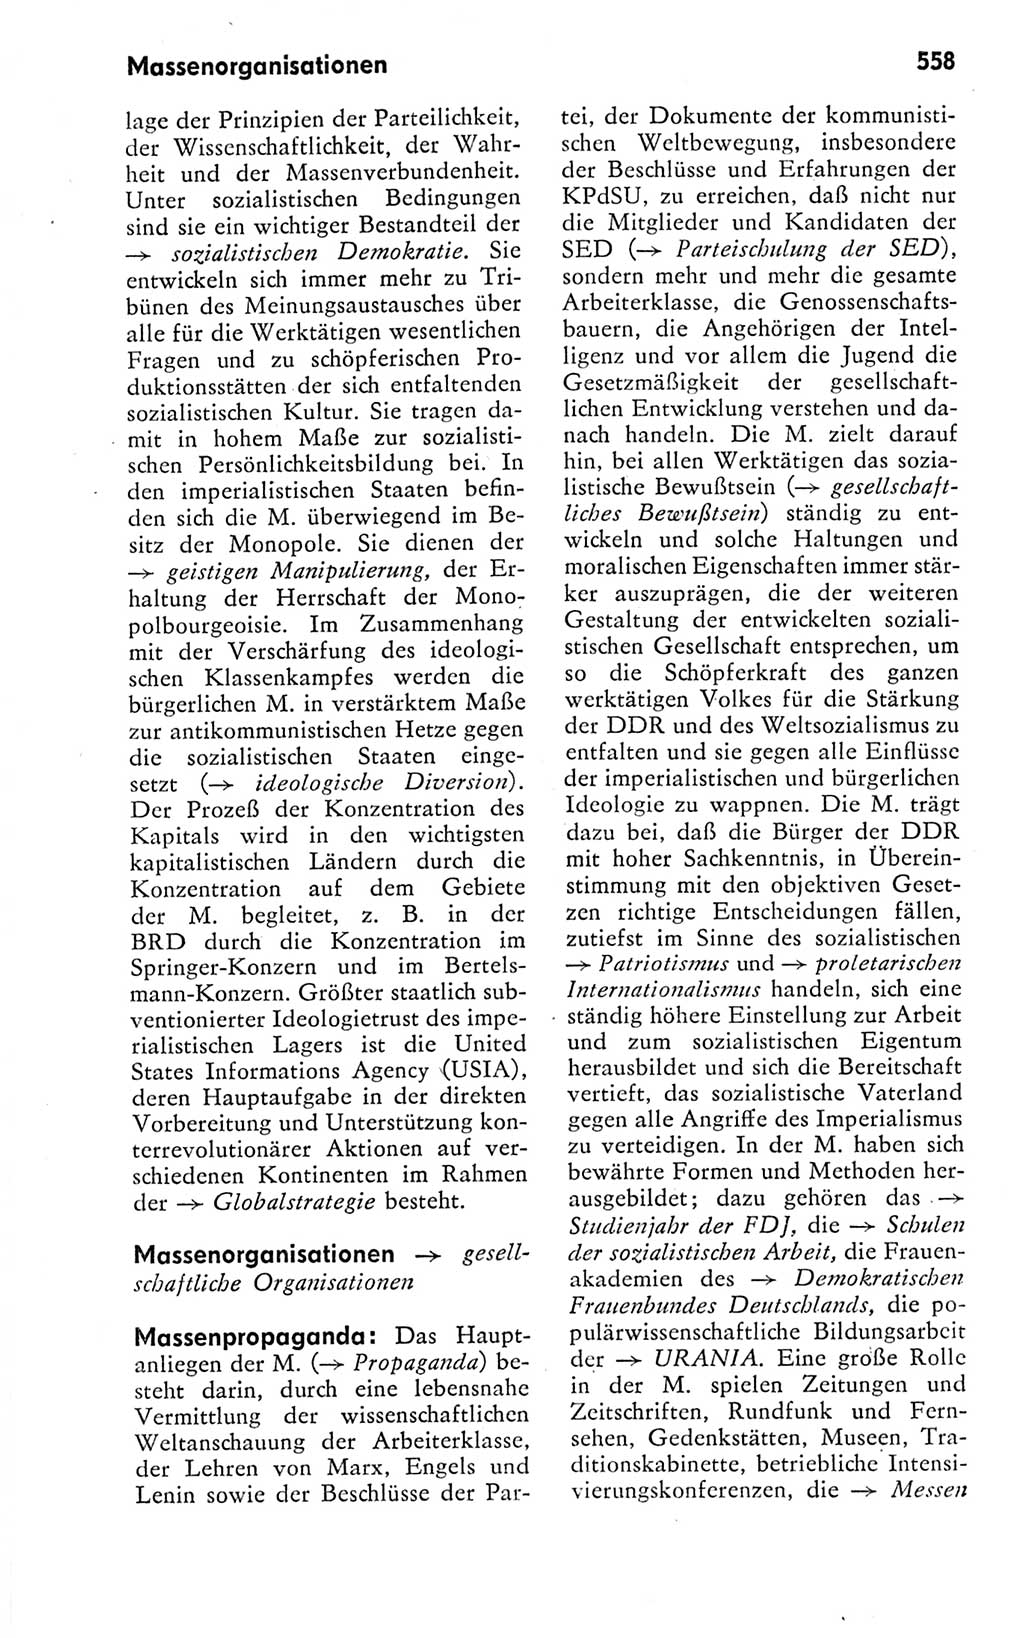 Kleines politisches Wörterbuch [Deutsche Demokratische Republik (DDR)] 1978, Seite 558 (Kl. pol. Wb. DDR 1978, S. 558)